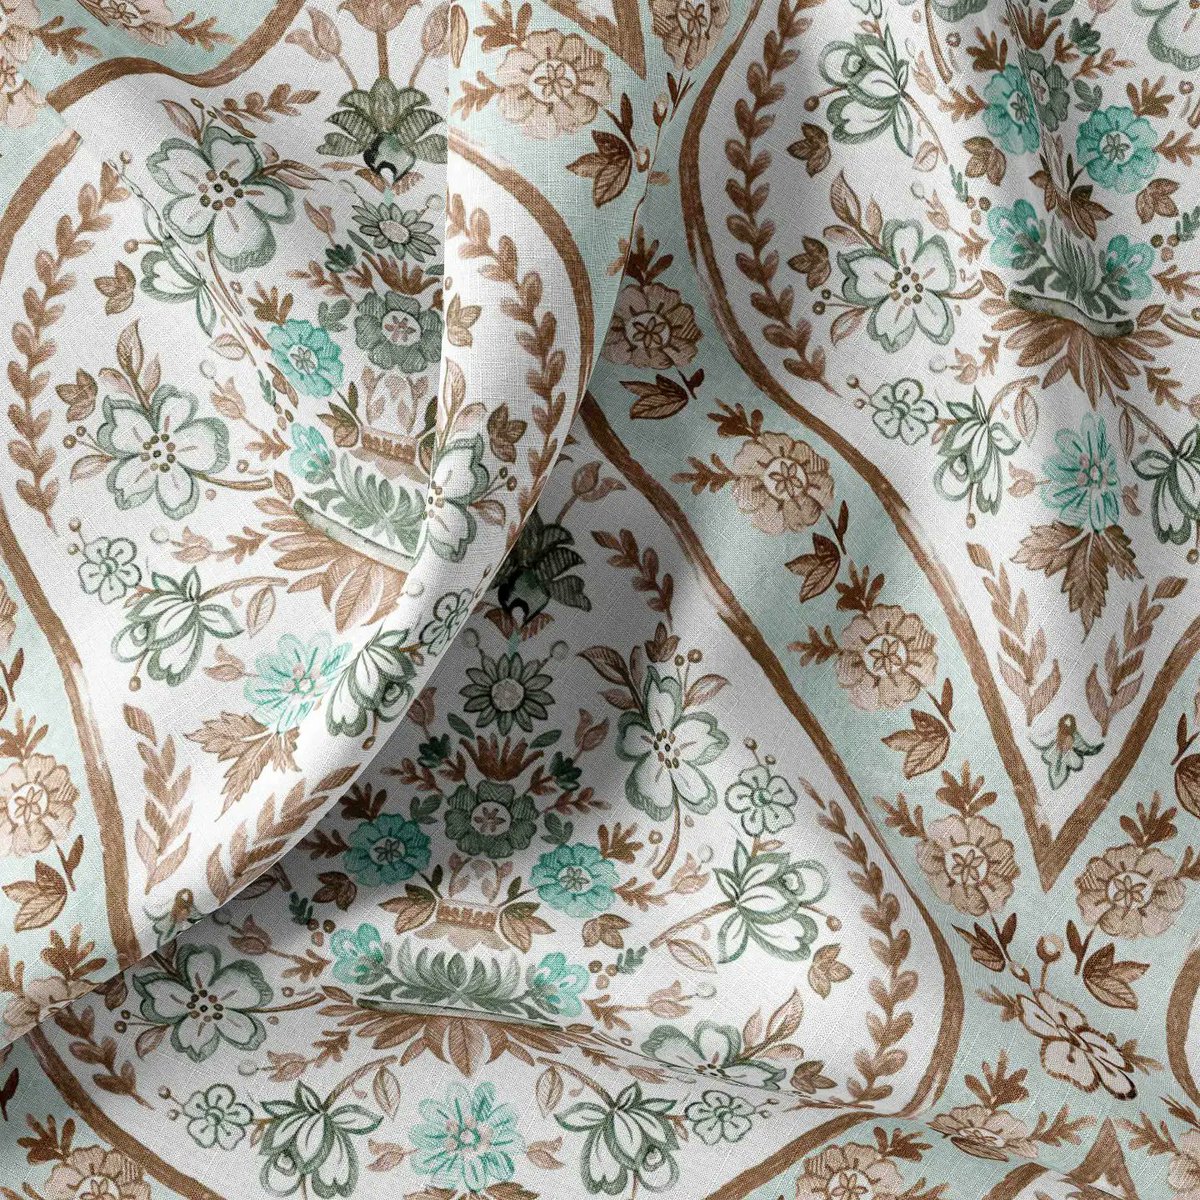 designstudio1987.com 
#textiles #textiledesign #surfacepatterncommunity